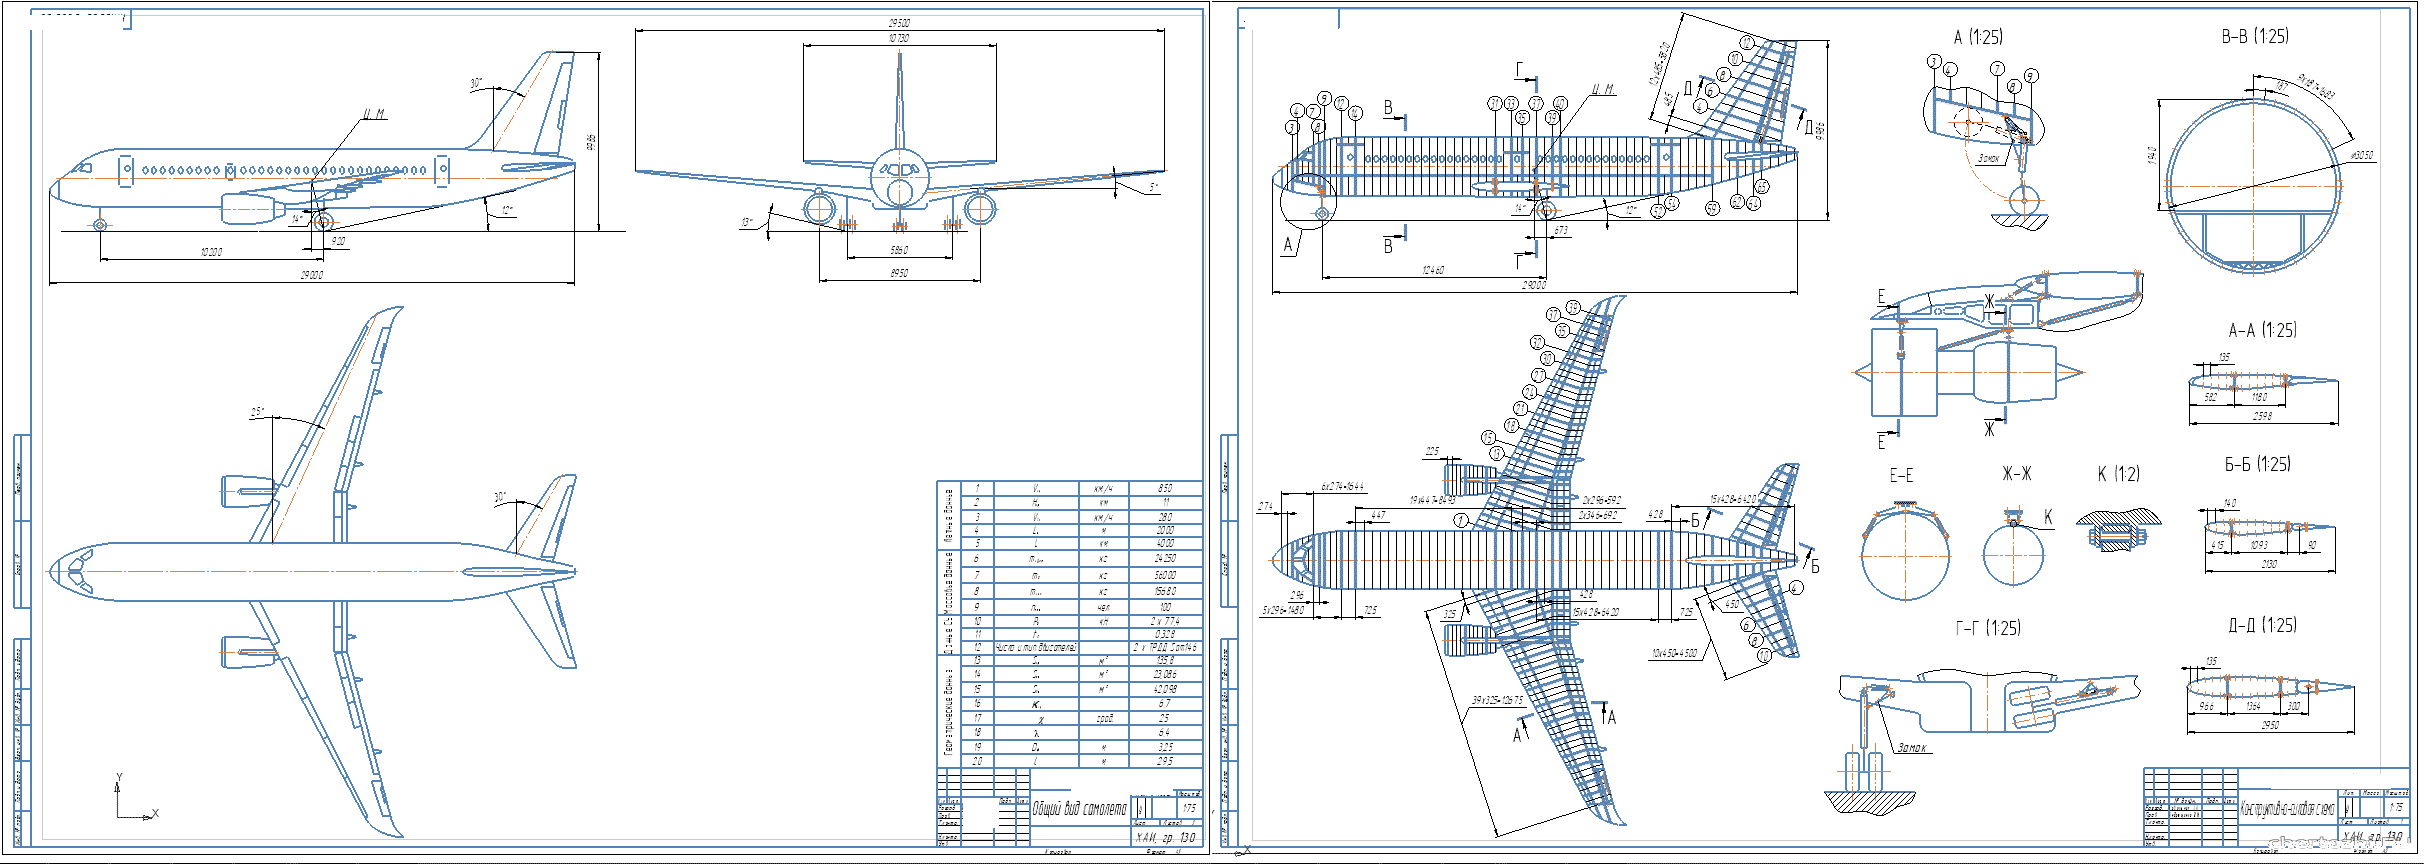 Курсовий проект - Определение параметров самолета в нулевом приближении и разработка конструктивно-силовой схемы